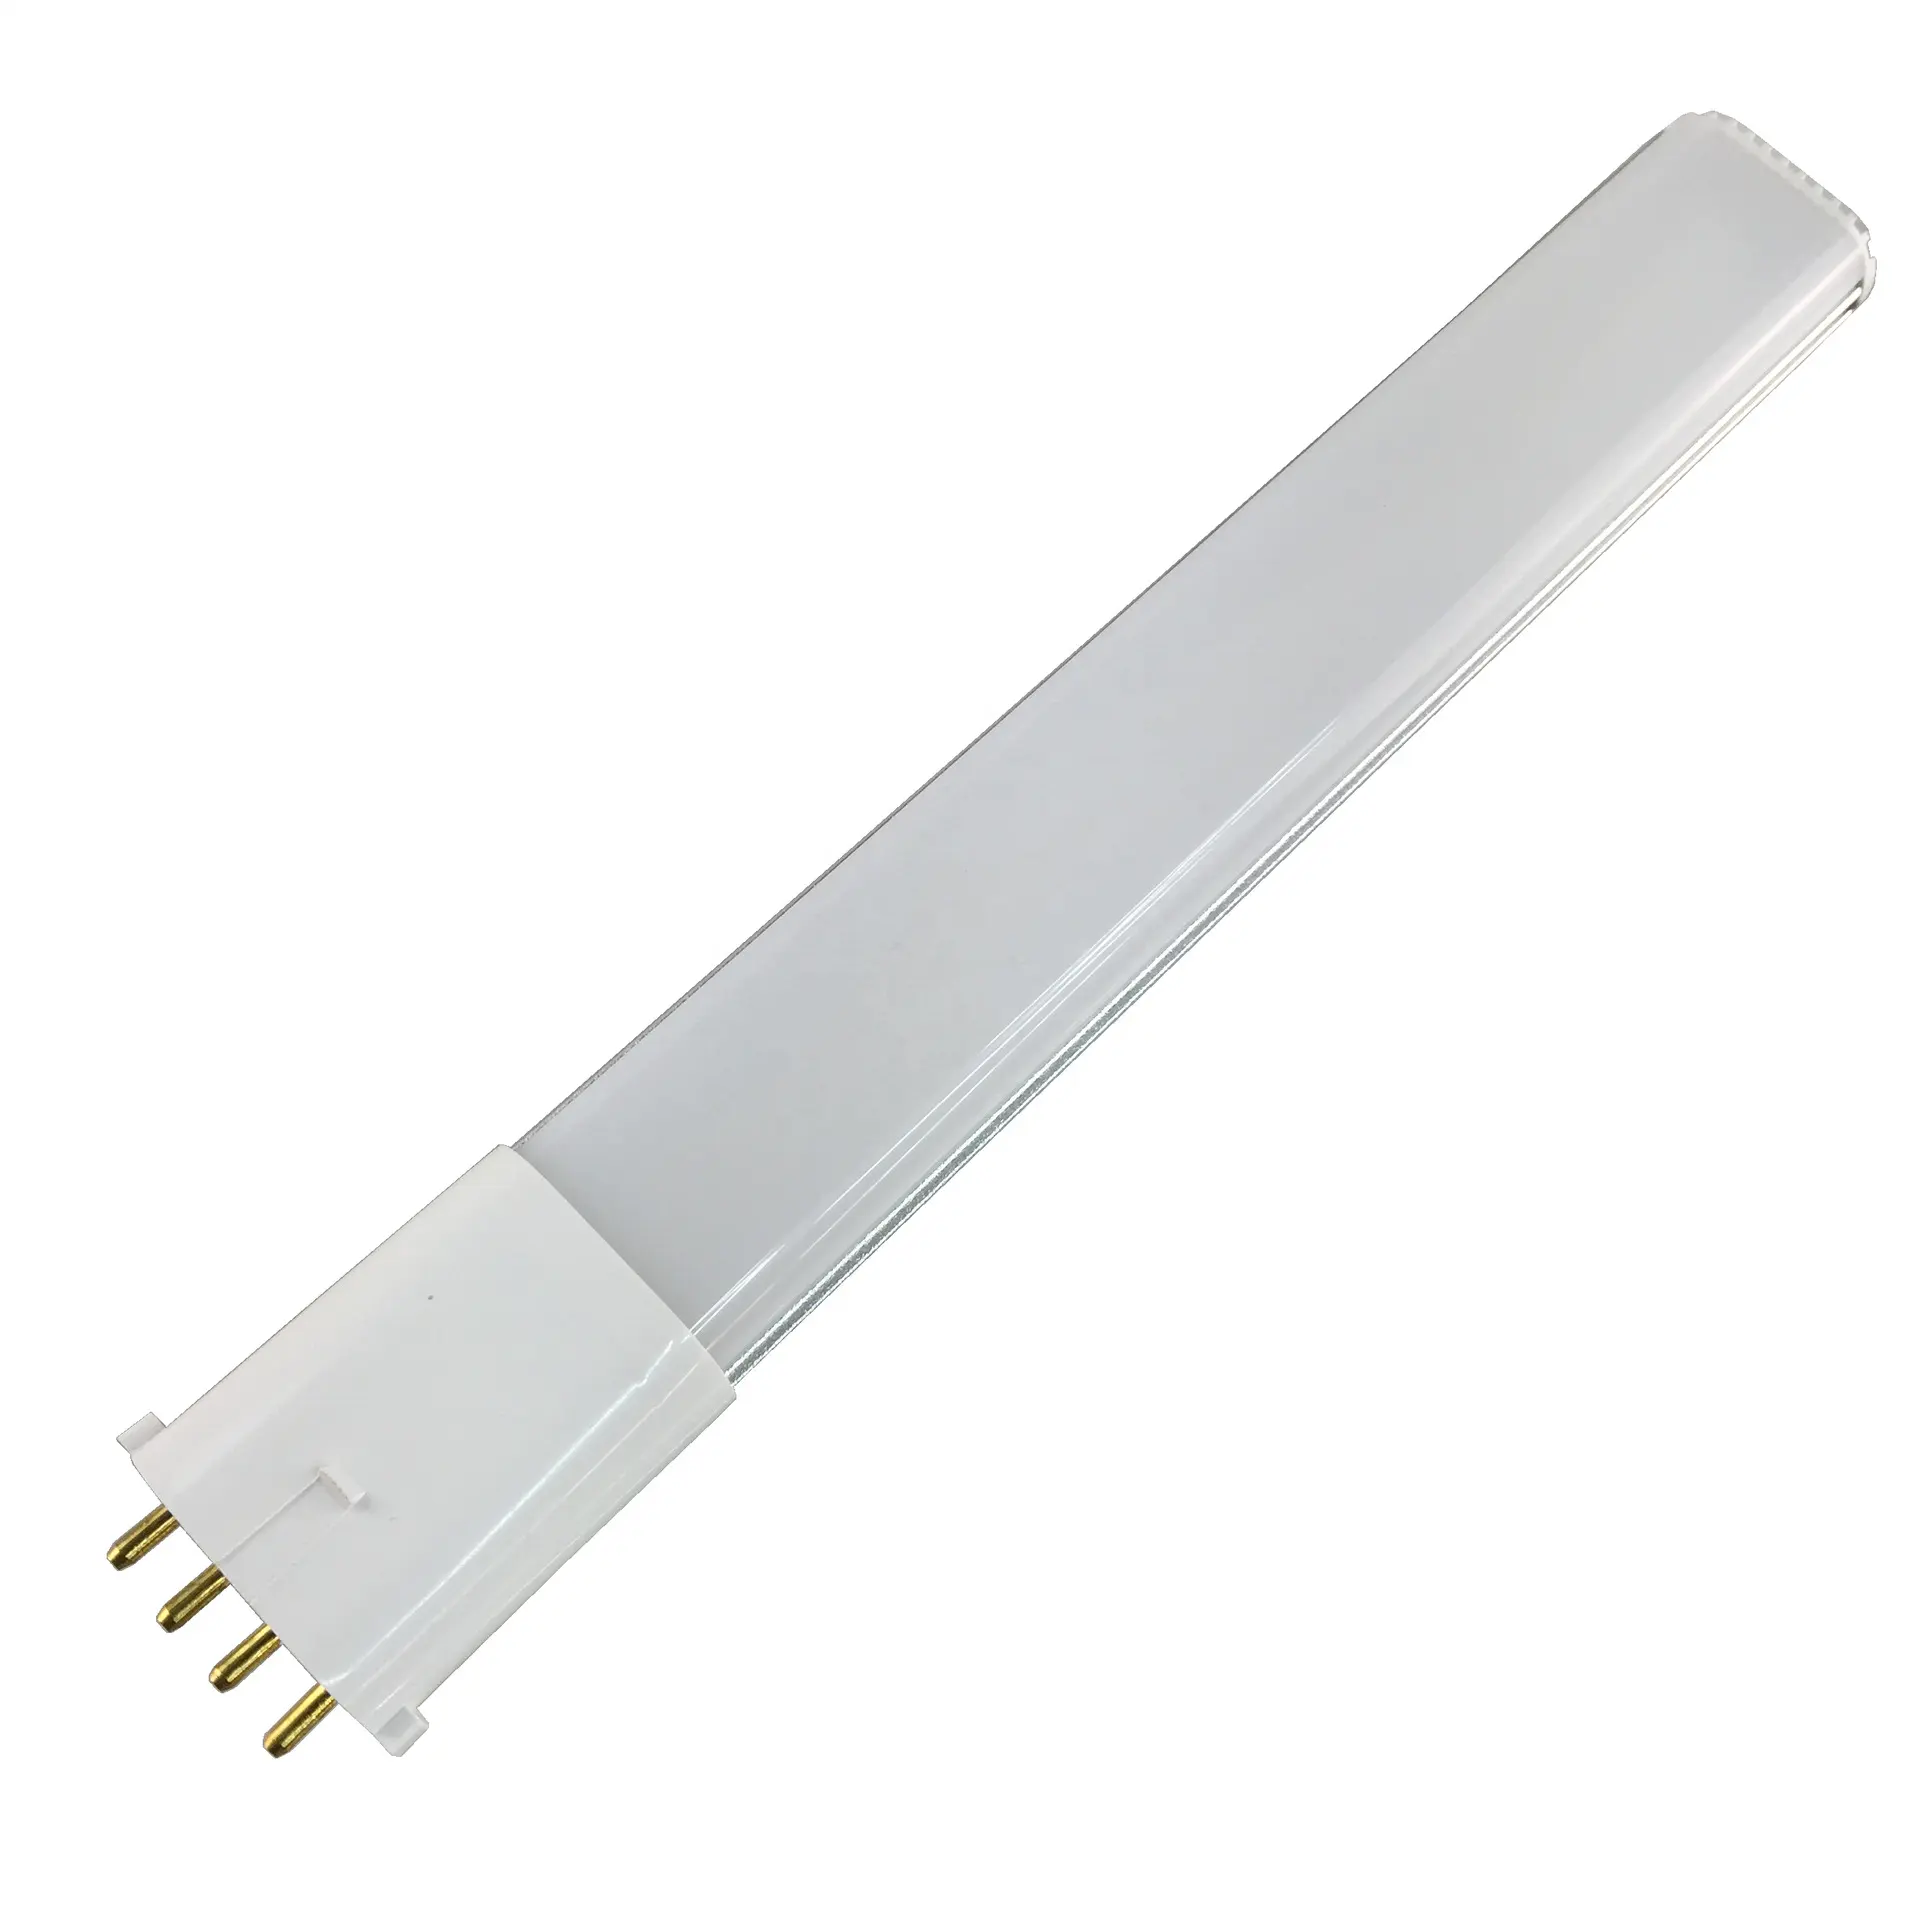 2 g7 LED-Lampe 2 gx7 LED pl Licht 4W 6W 8W Horizontal stecker 4-poliges Röhren licht Aluminium warmweiß/Natur weiß/Kaltweiß